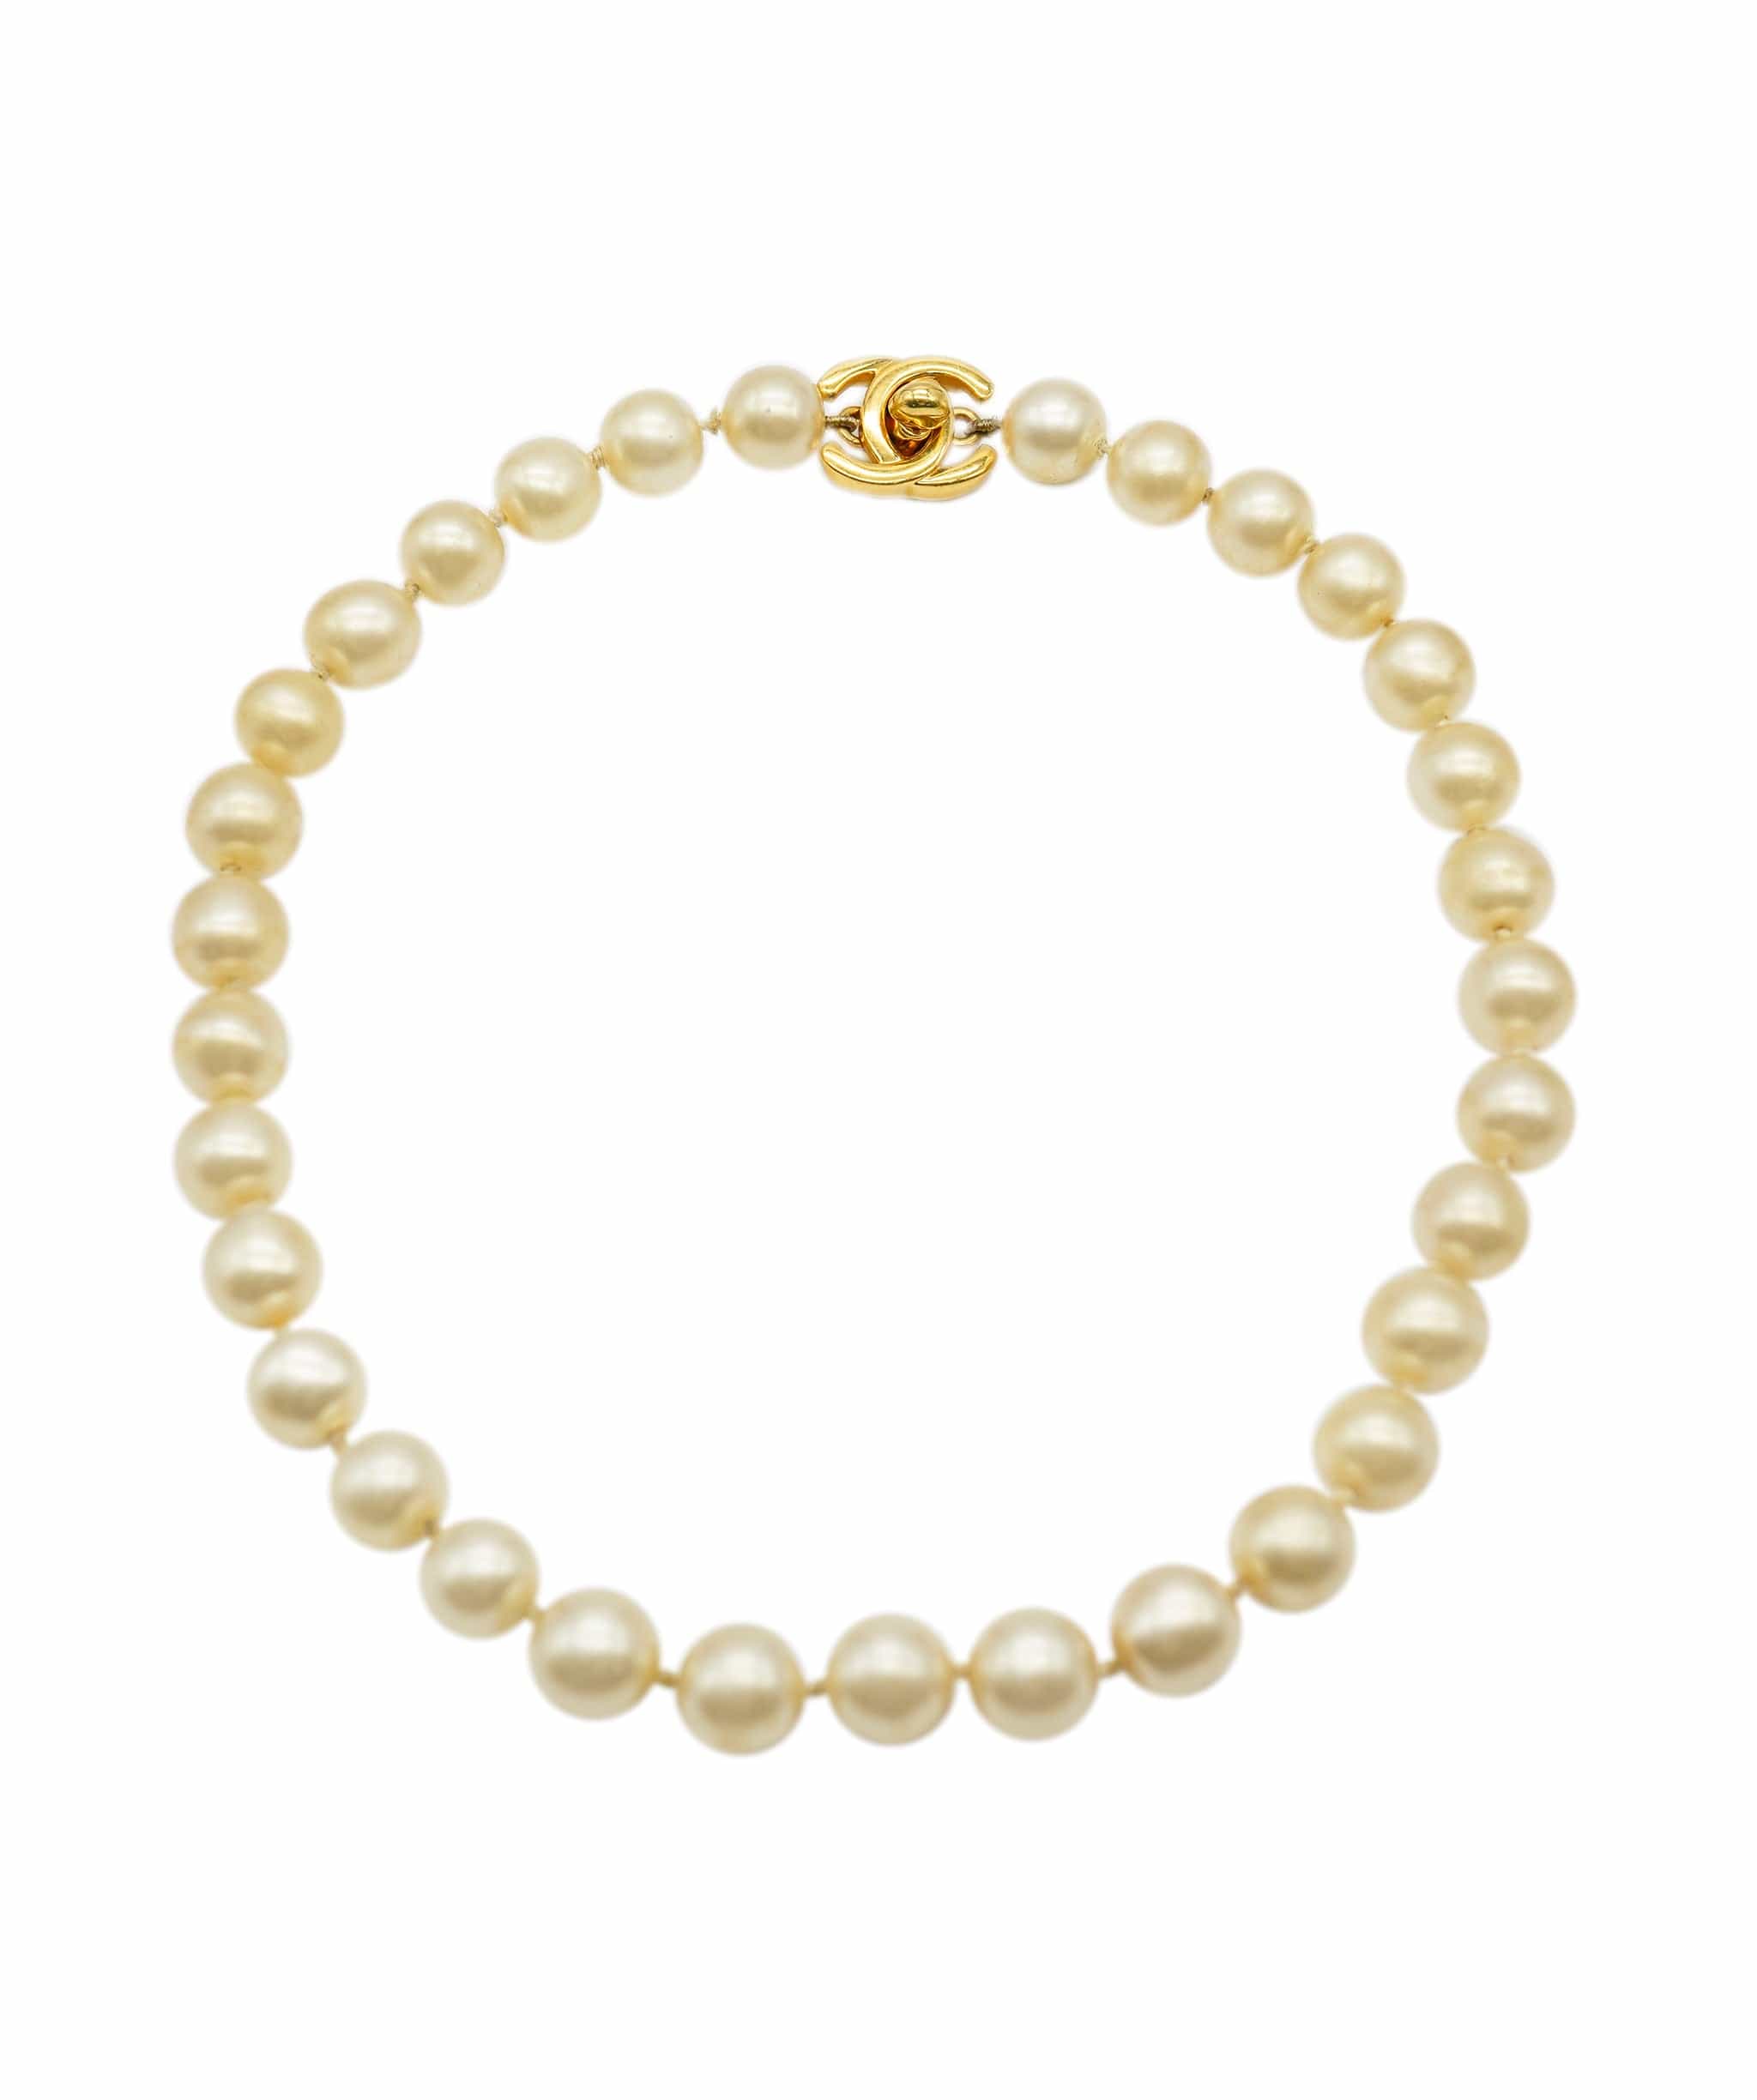 Chanel RARE chanel turnlock pearl necklace ALC0766